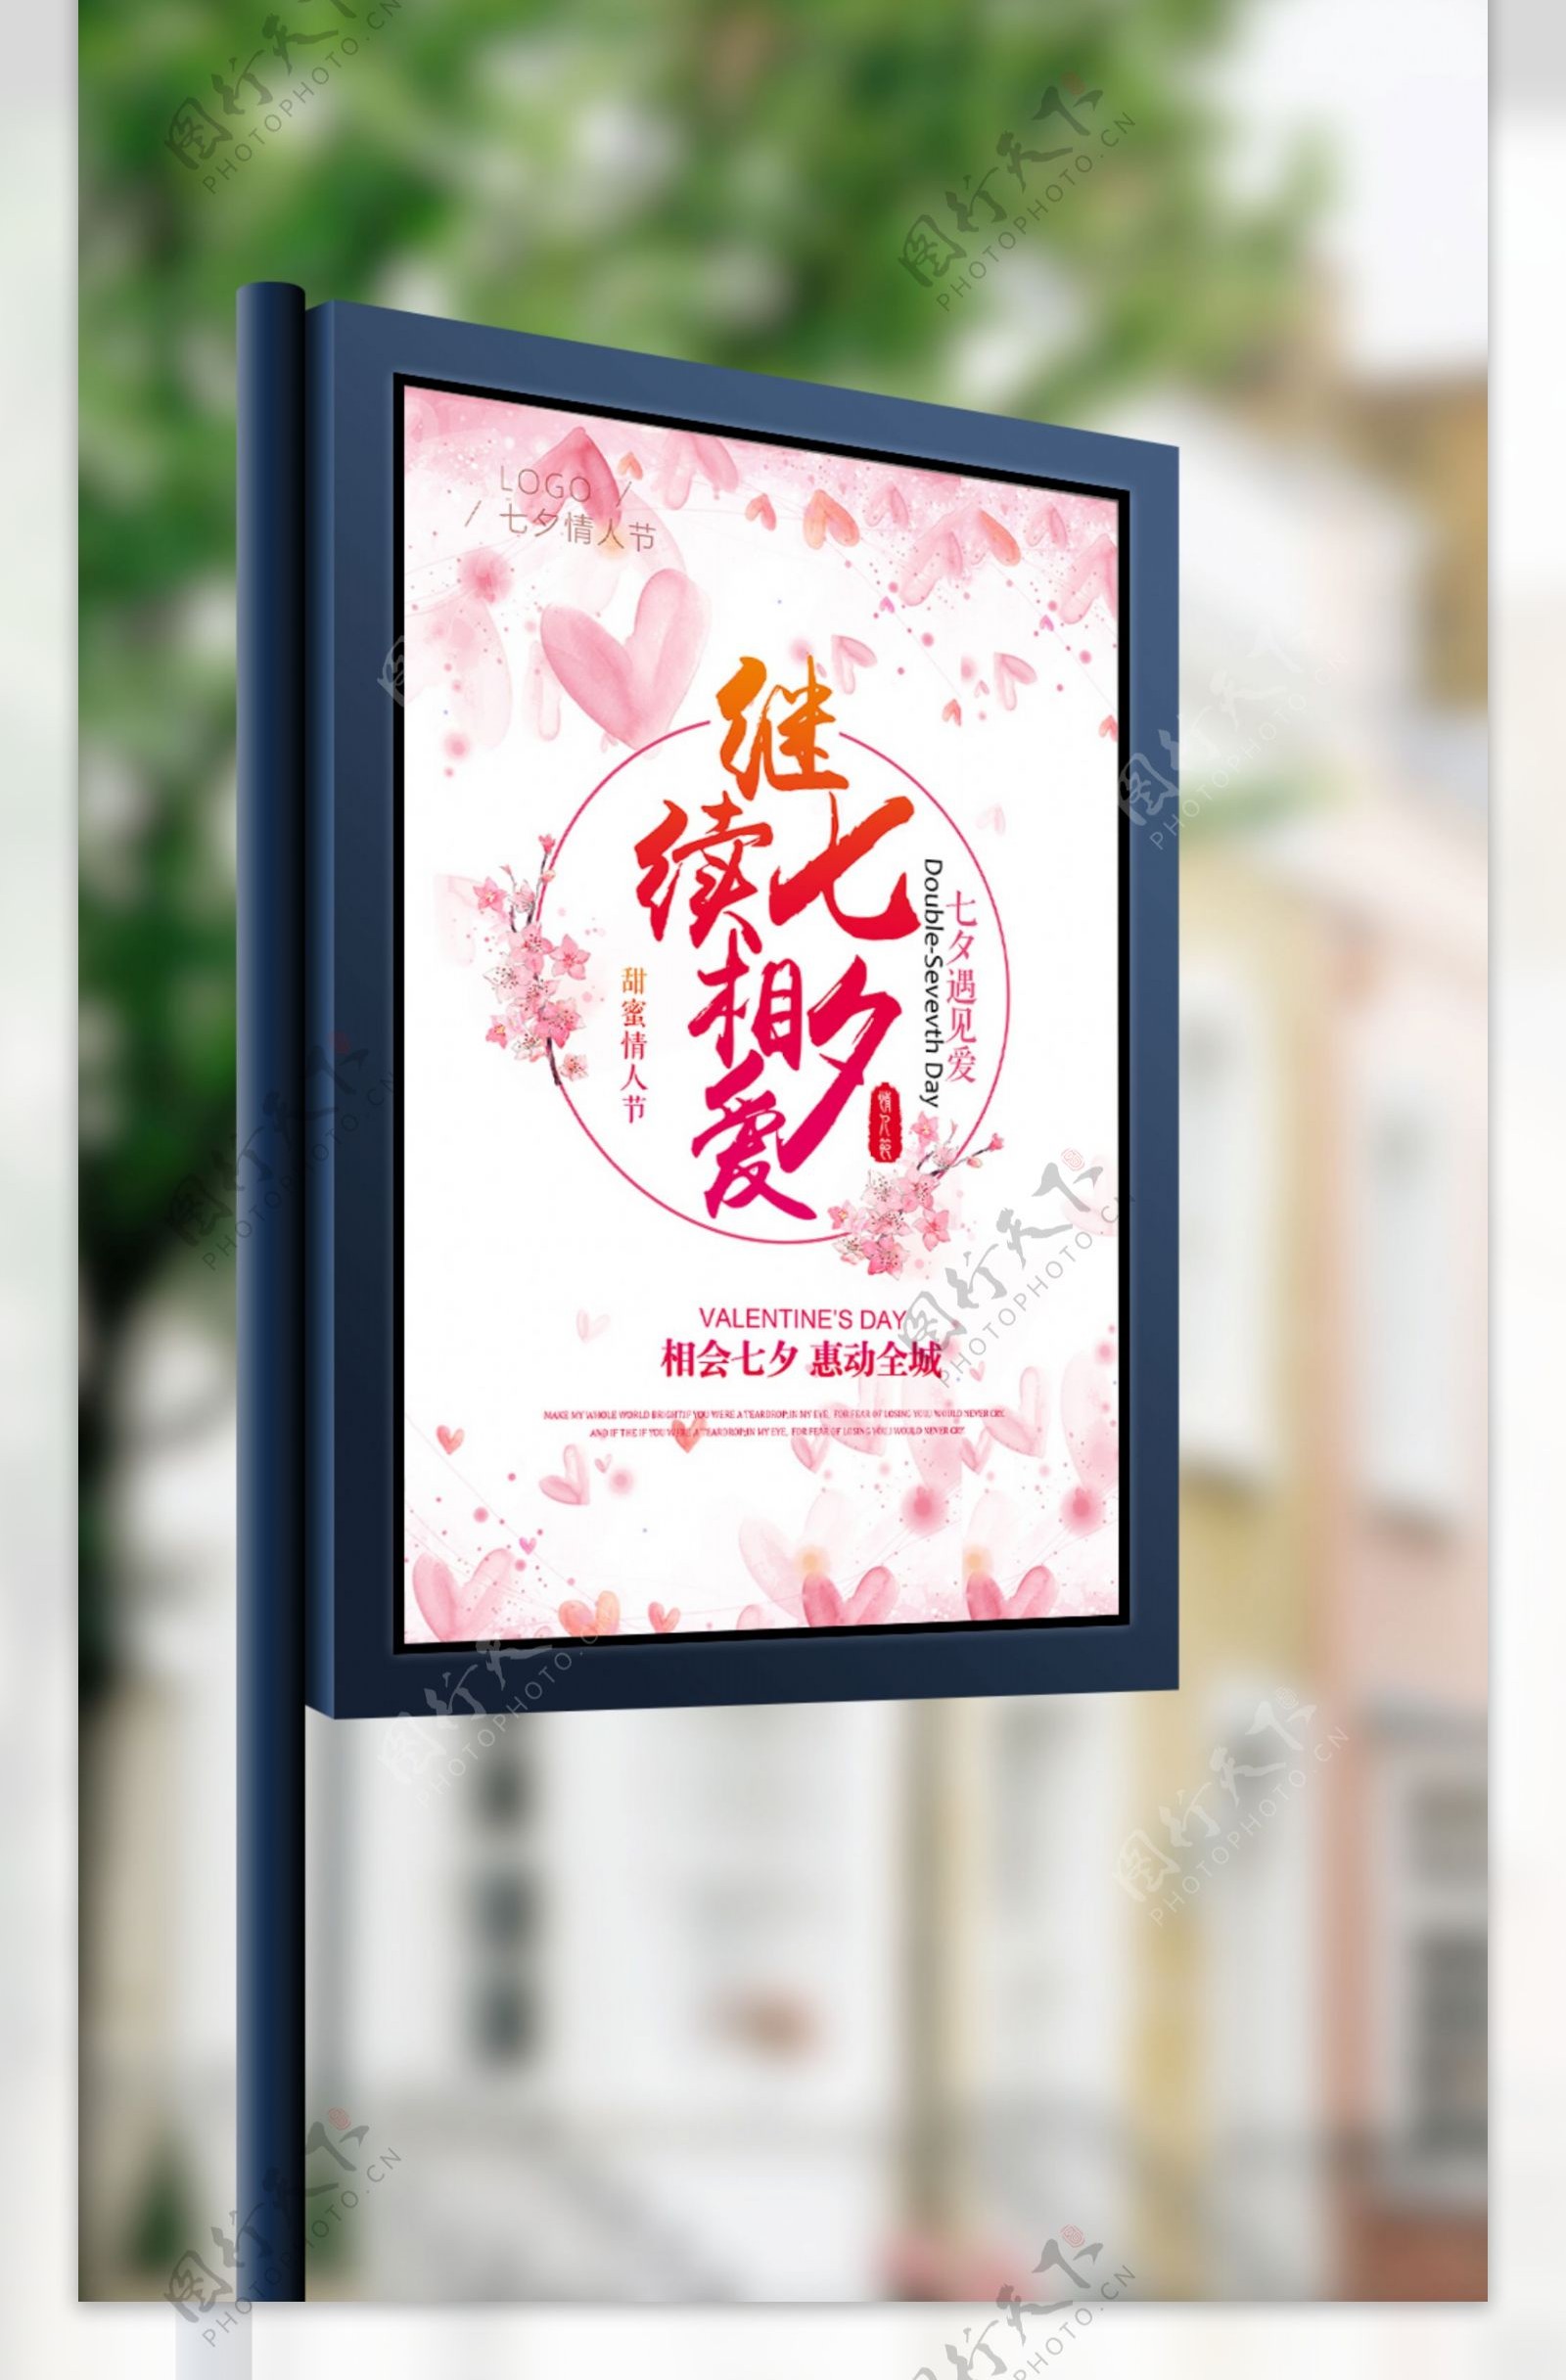 唯美简约清晰温馨浪漫中国传统节日七夕节海报